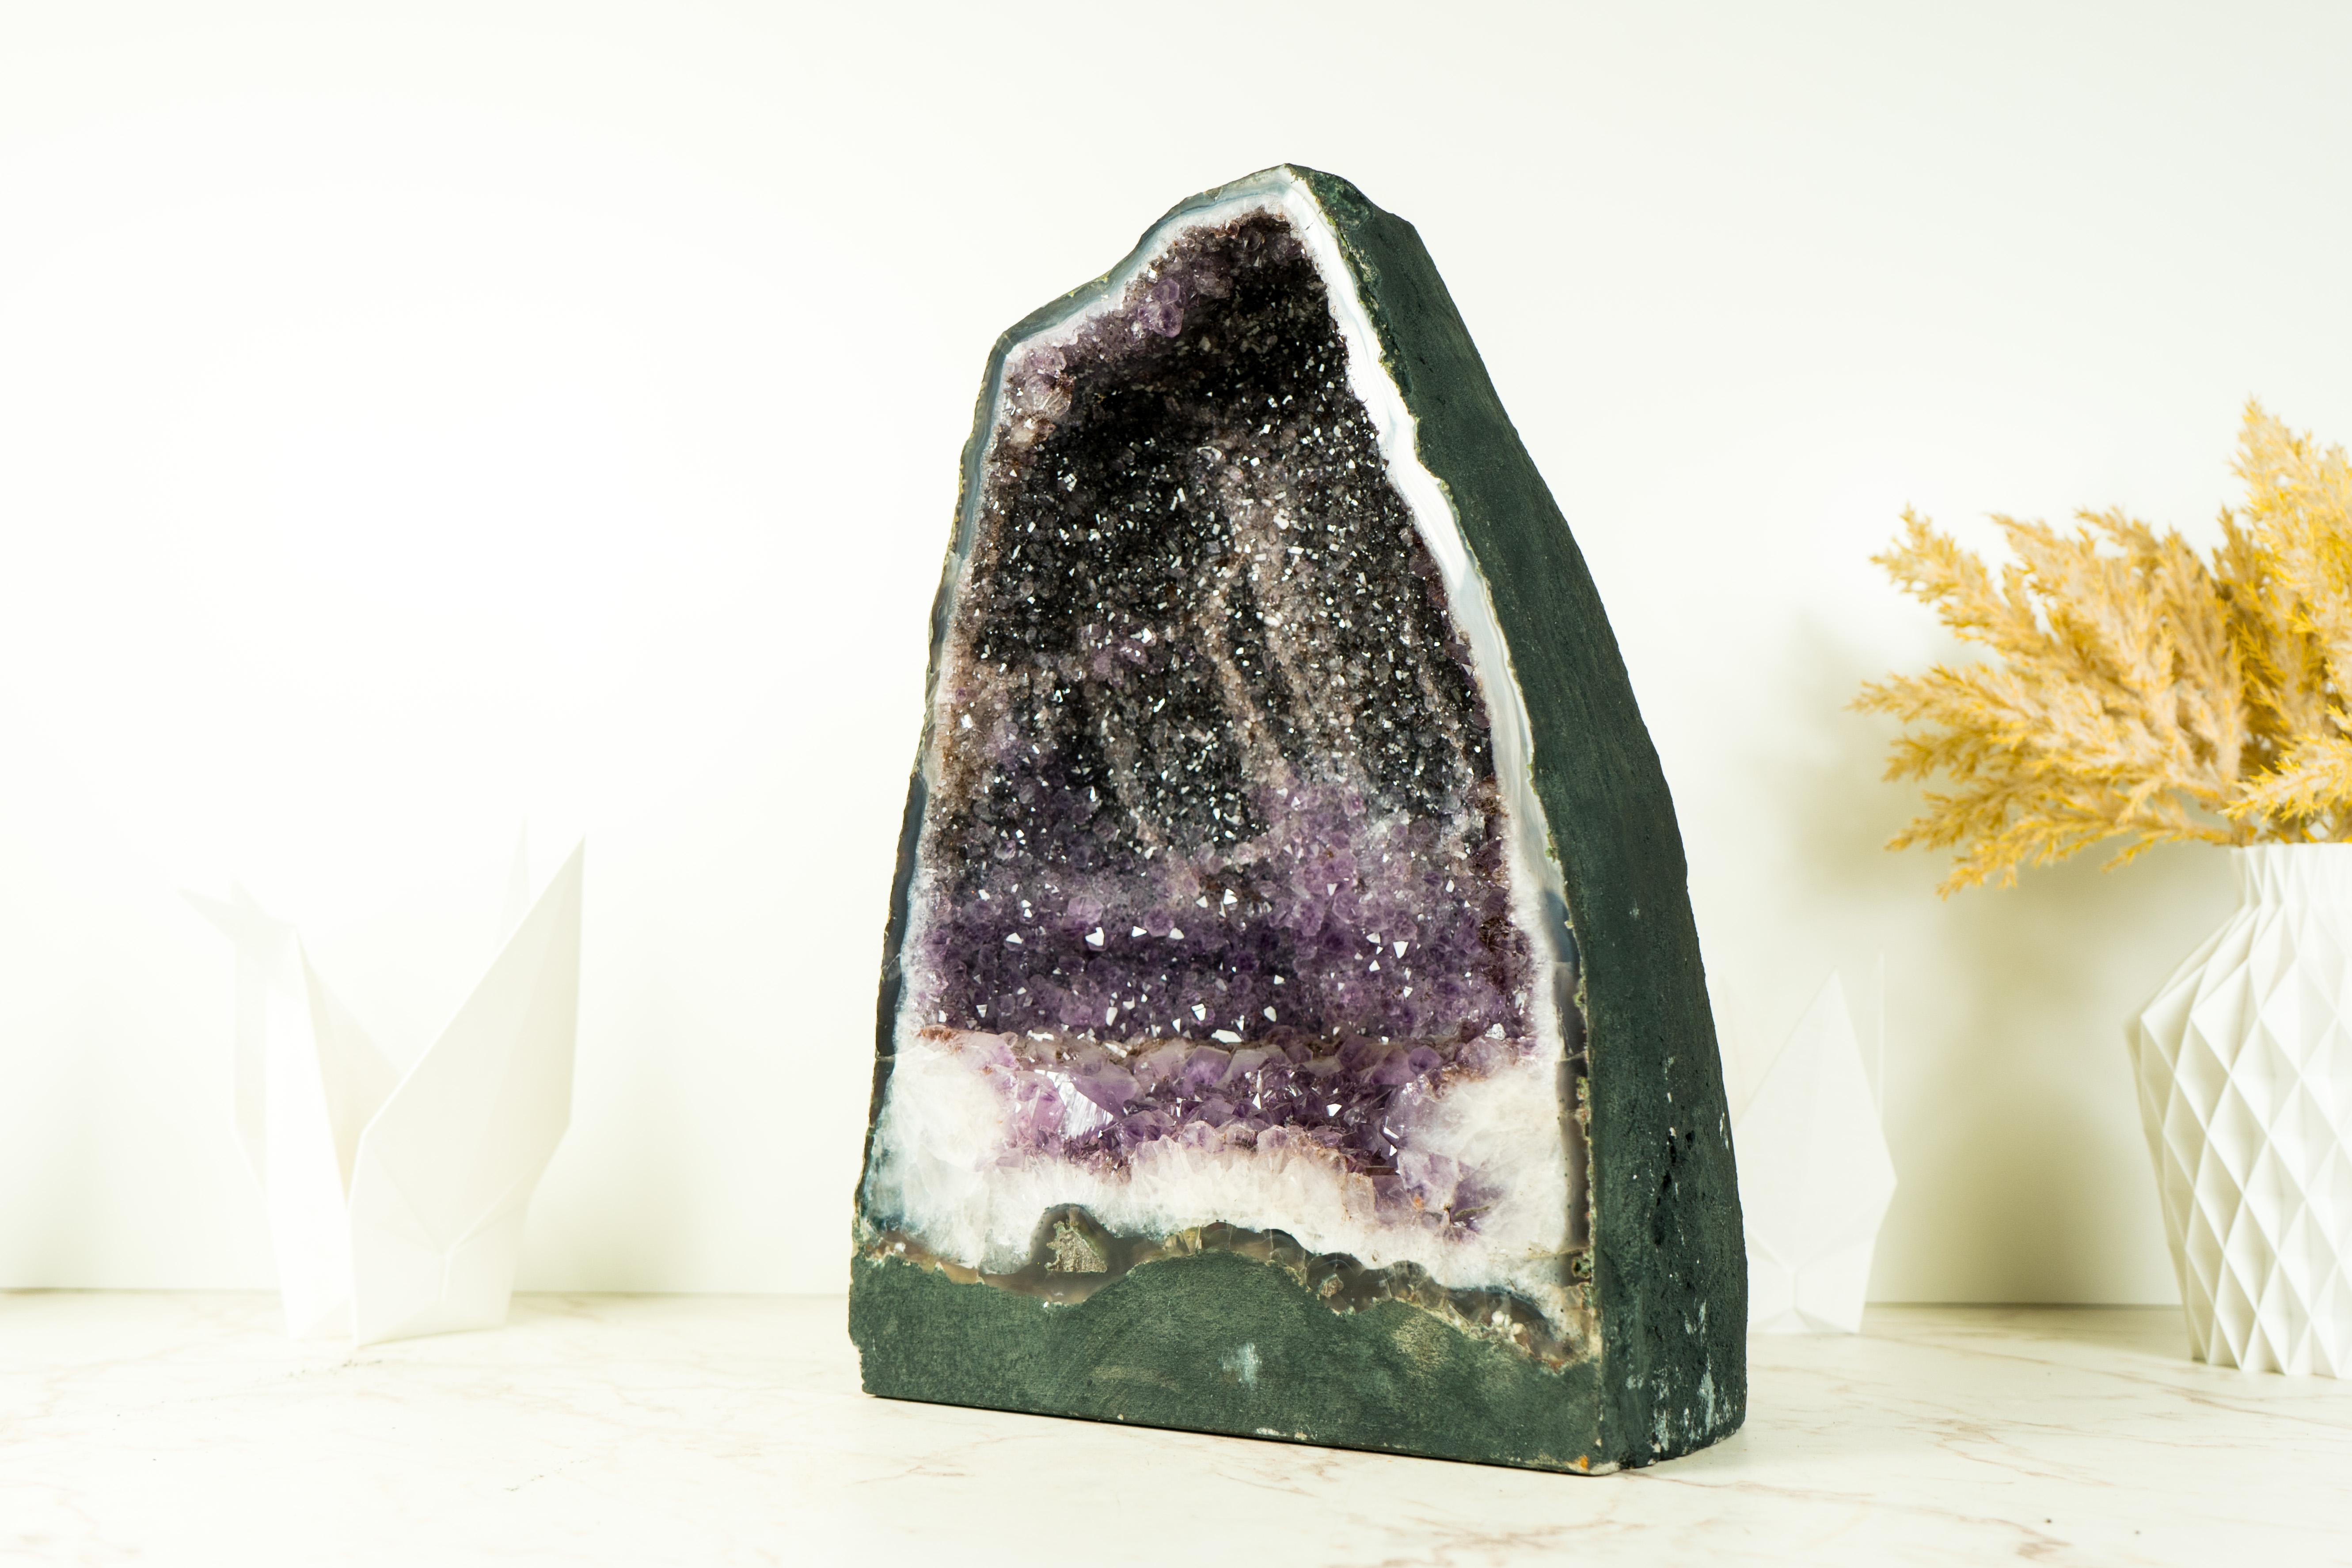 Diese wunderschöne und seltene Amethyst-Geode zeigt den selten zu sehenden zweifarbigen Druzy in einer perfekt geformten Kathedralform. Ein wahres Unikat natürlicher Kunst, das Ihren Raum verschönert, sei es Ihre Kristallsammlung oder das